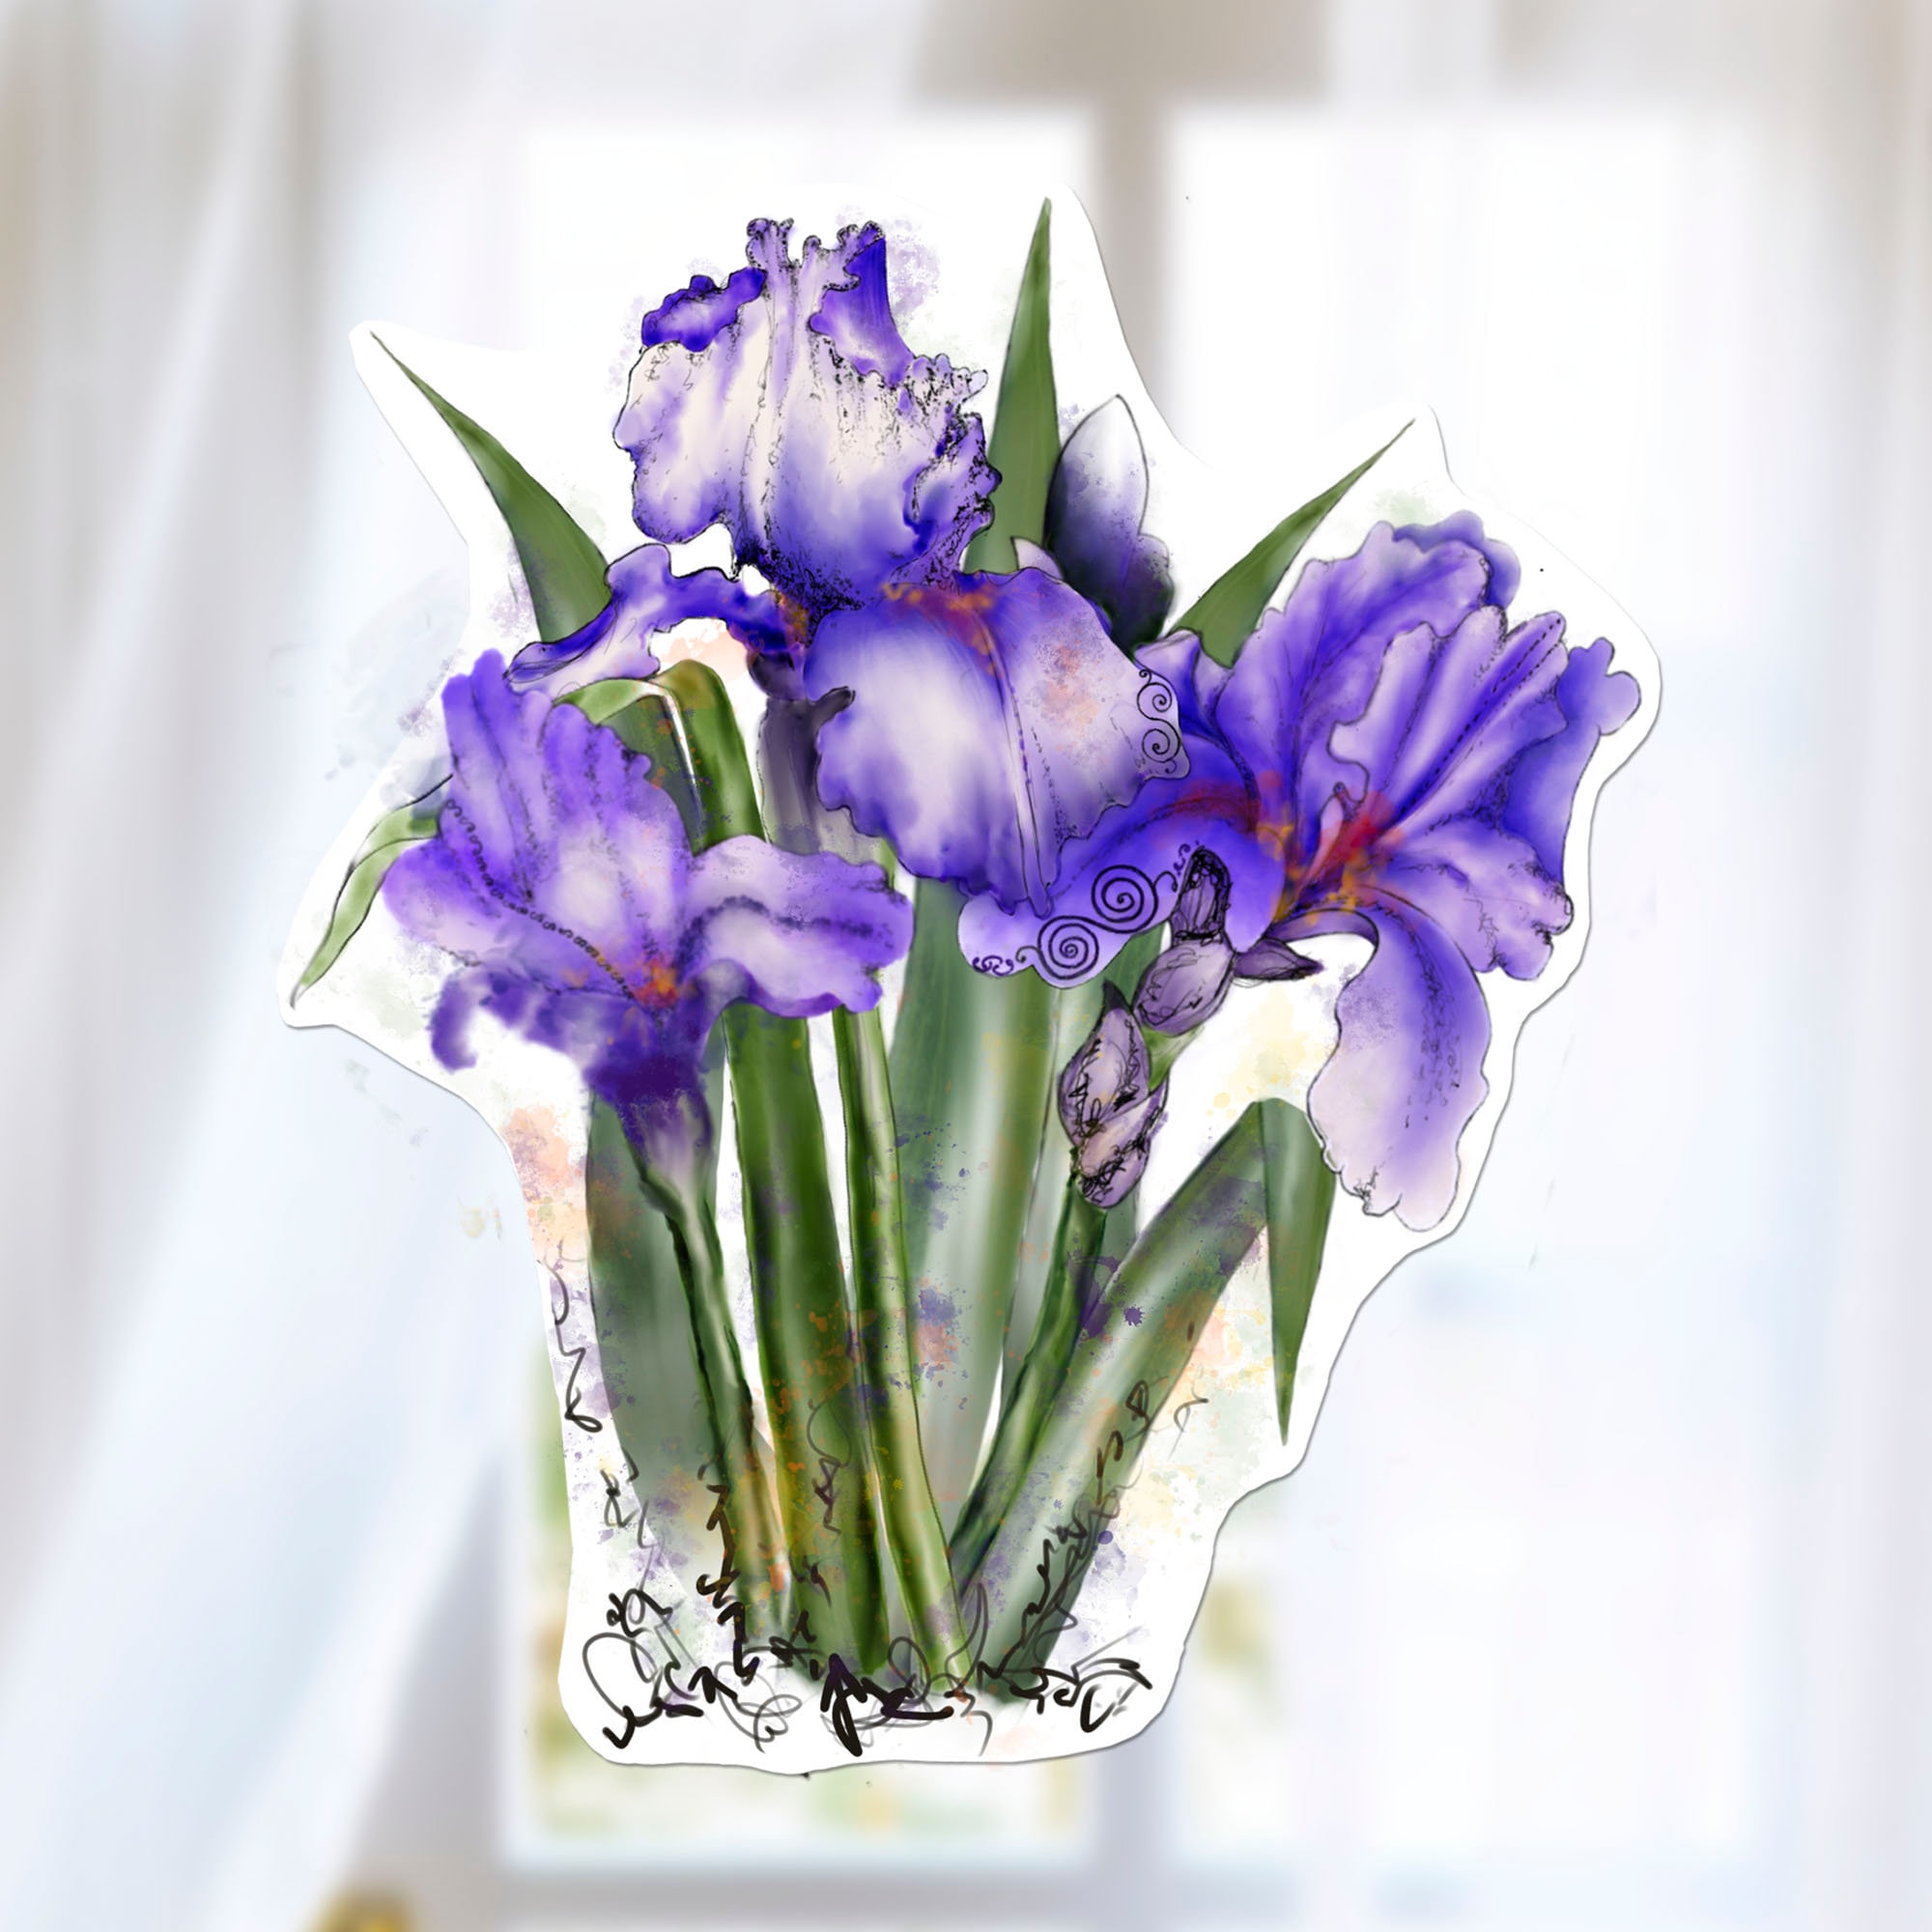 Iris Fleurs Violet Autocollants De Voiture Pour Ordinateur